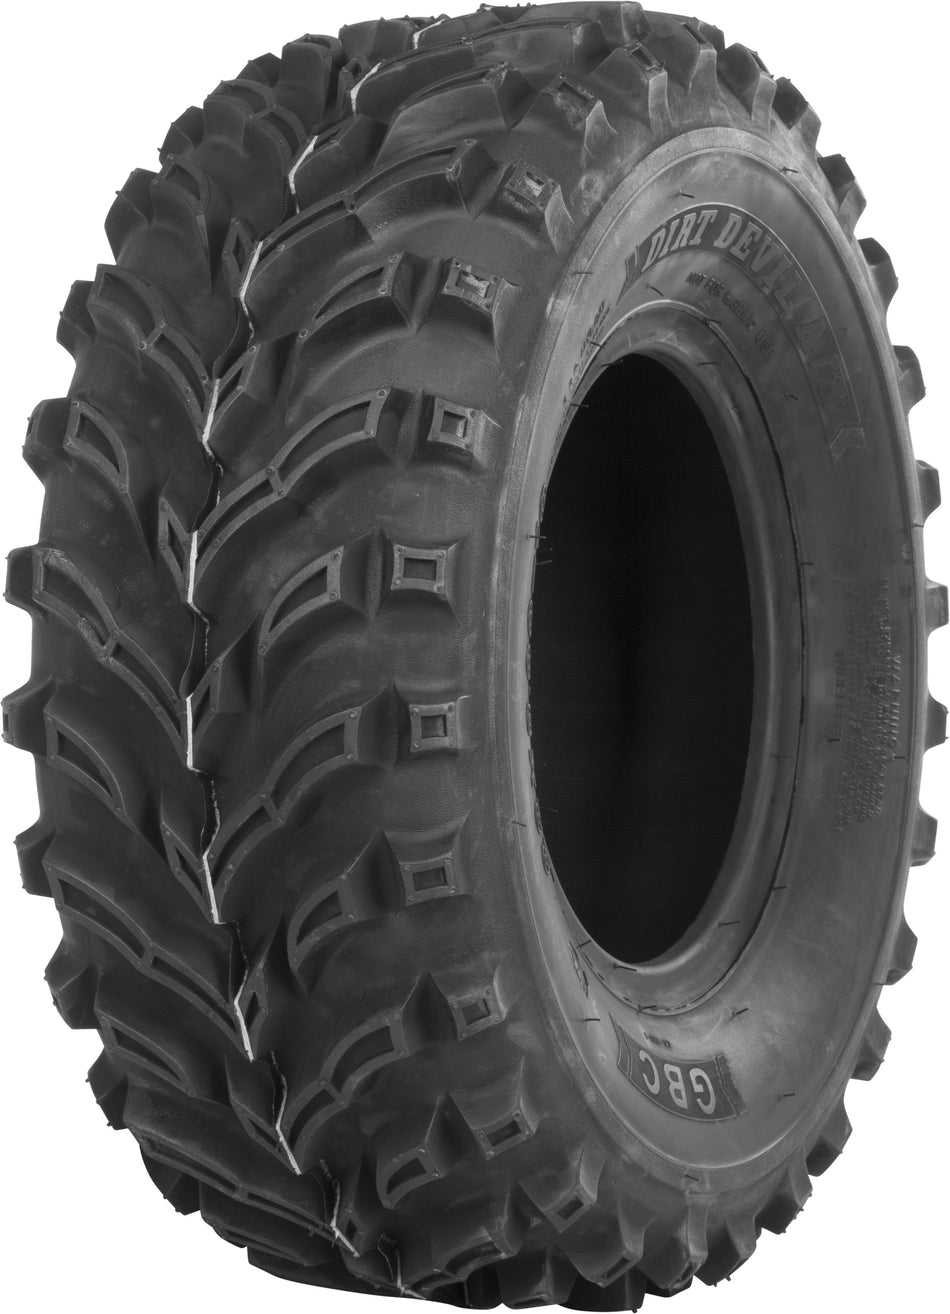 GBC Tire Dirt Devil A/T Front 22x8-10 Bias Lr-275lbs AR1028